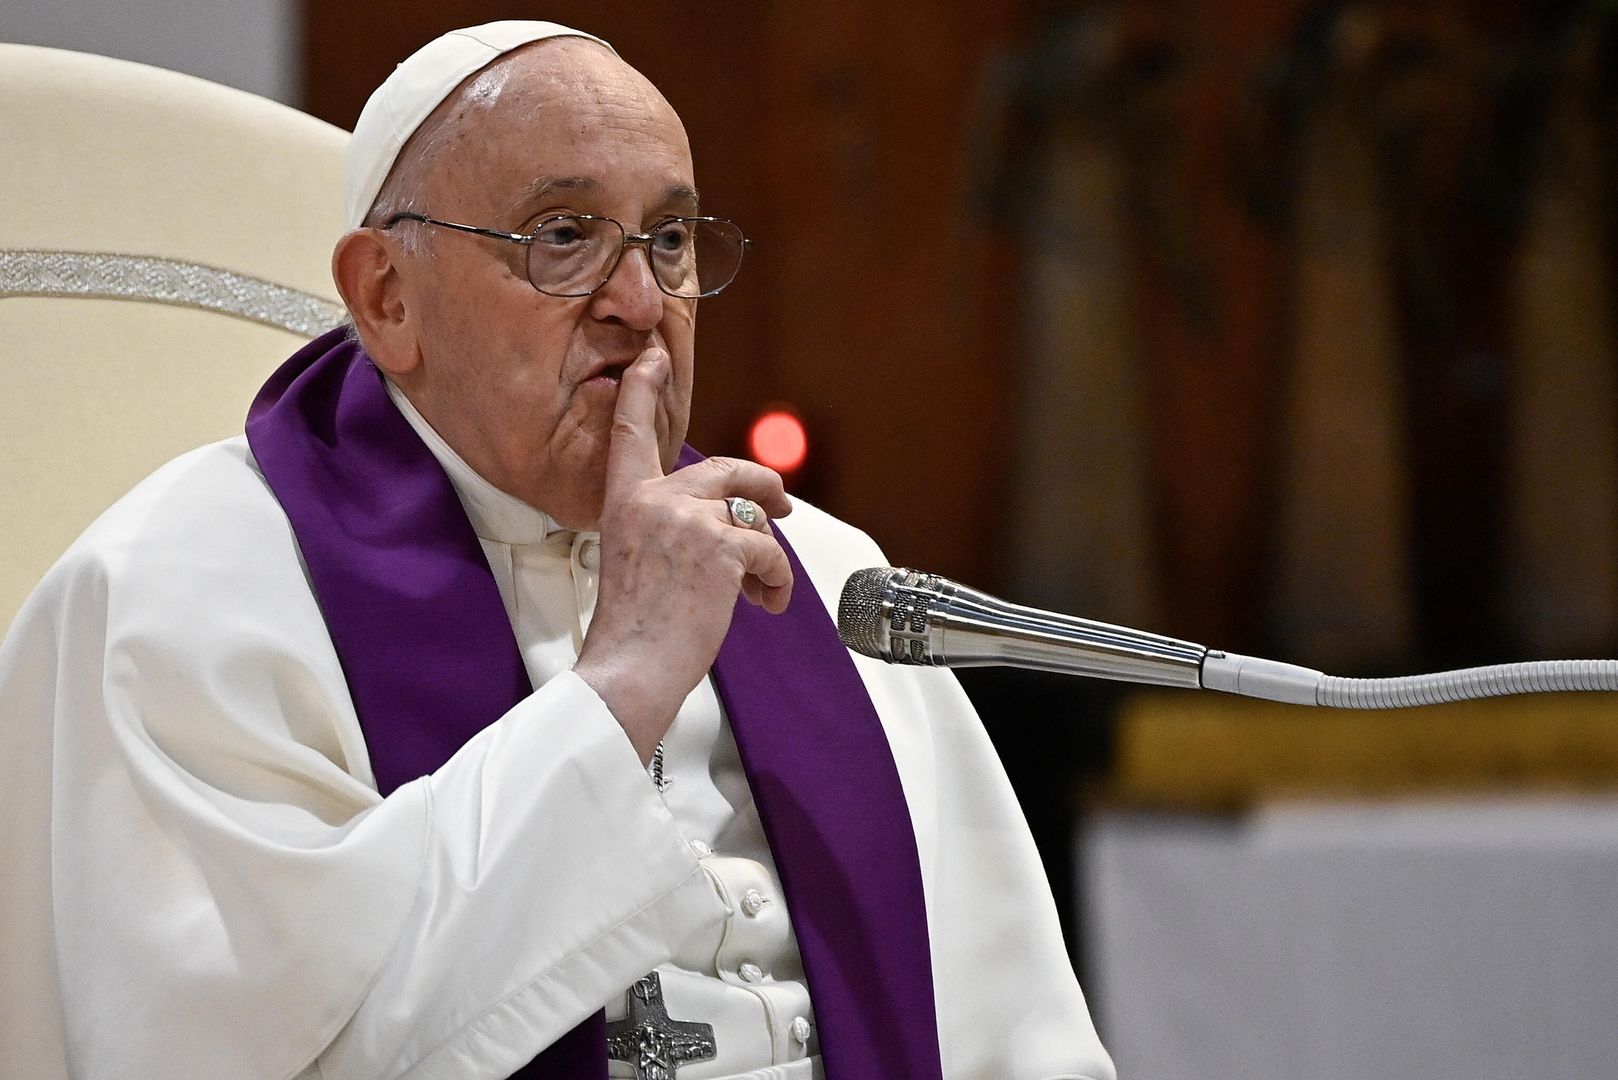 Skandaliczne słowa papieża wobec Ukrainy. "Kiedy widzisz, że poniosłeś porażkę"